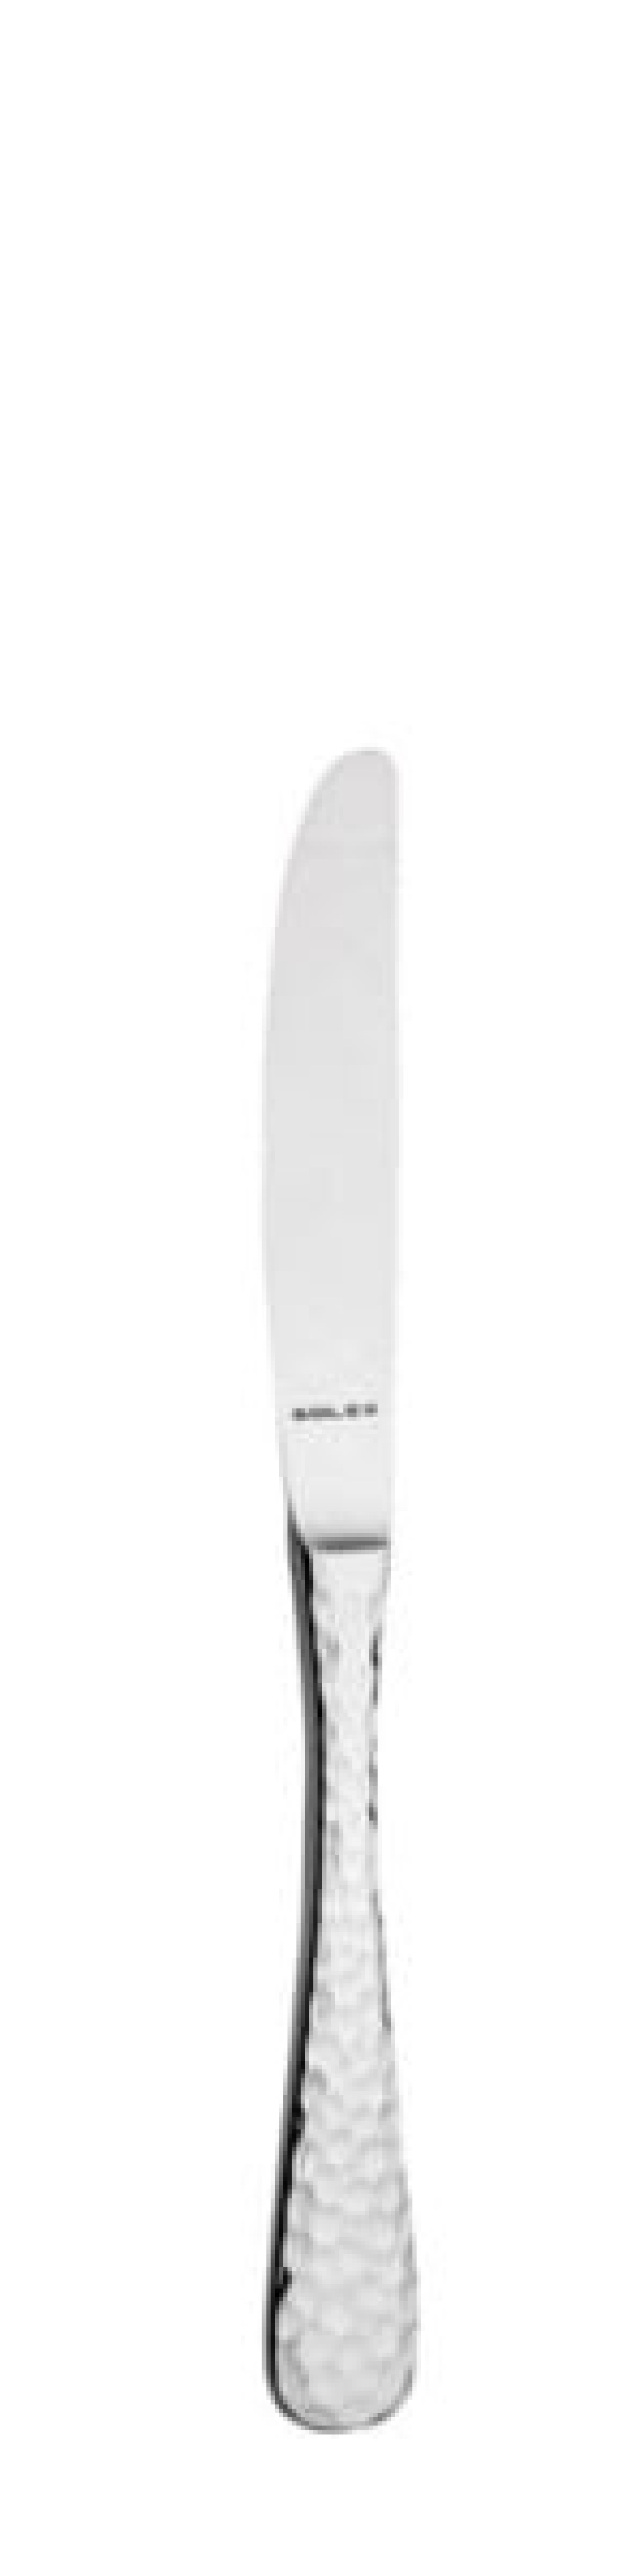 Nóż deserowy Lena 211 mm - Solex w grupie Nakrycie stołu / Sztućce / Noże w The Kitchen Lab (1284-21619)